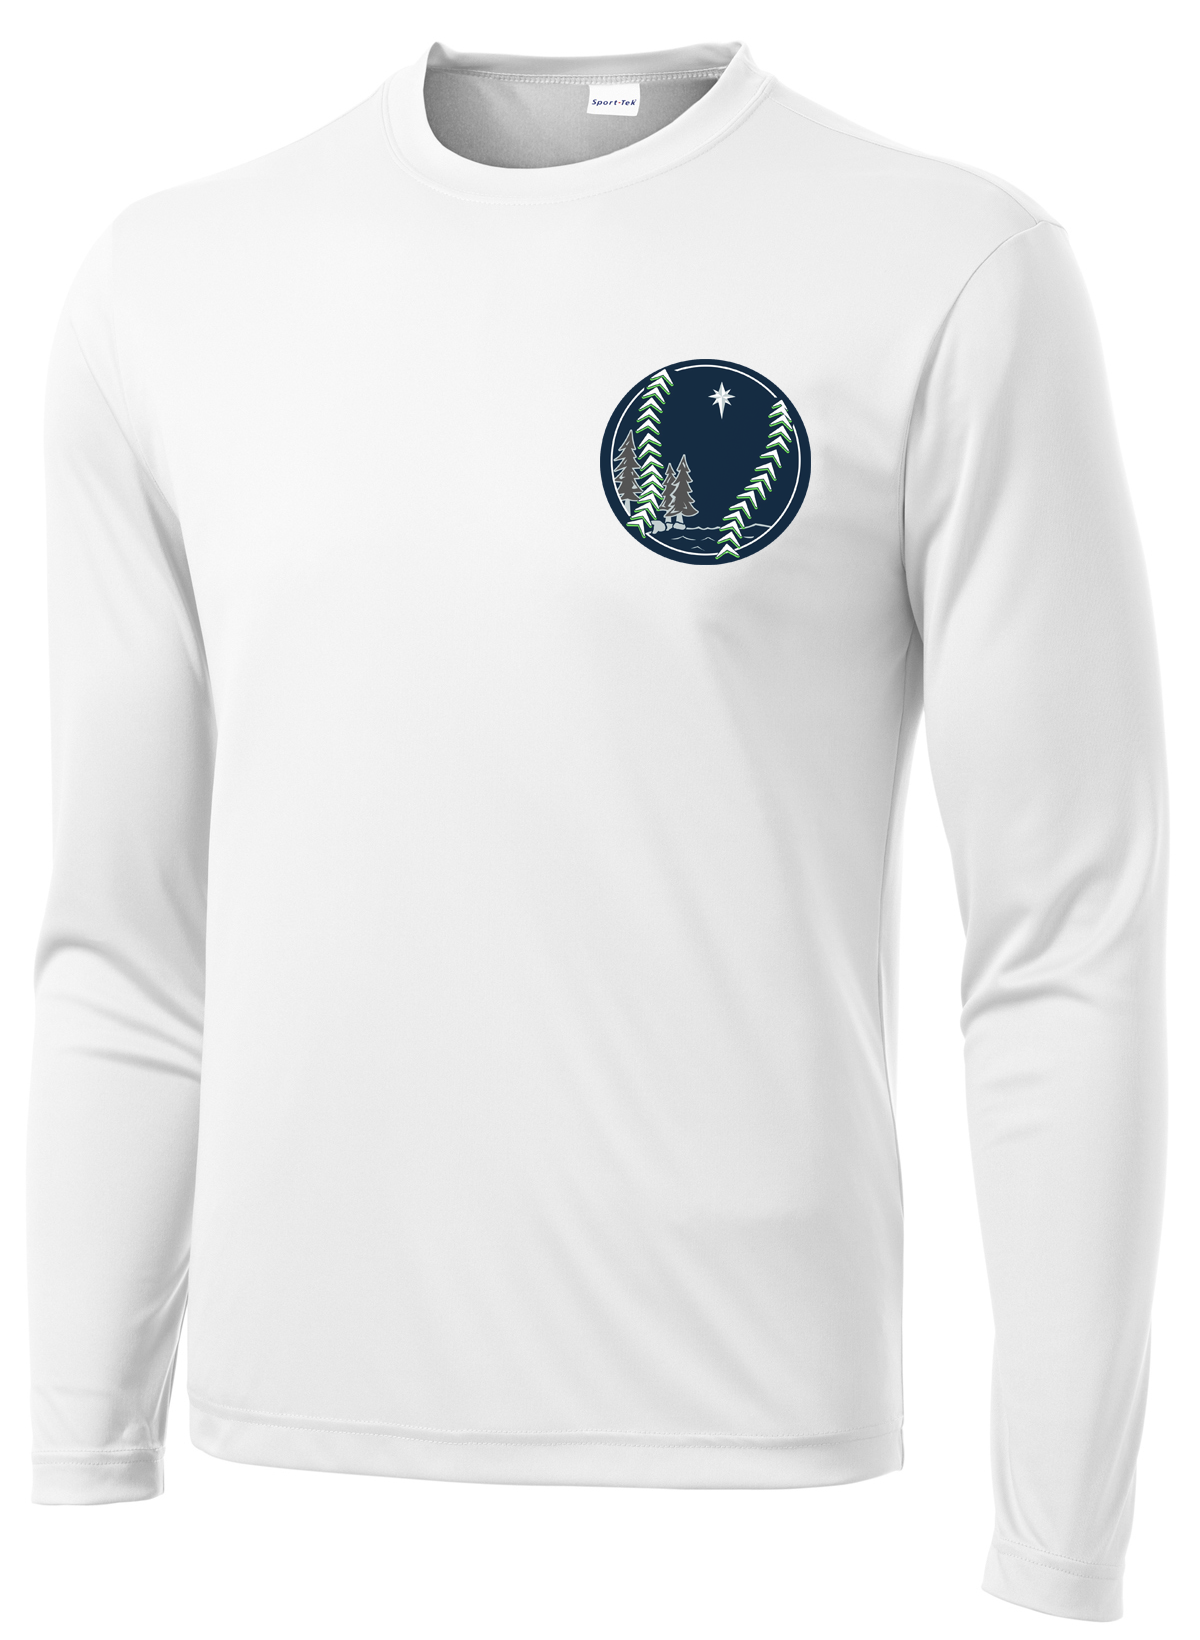 Northstar Baseball White Long Sleeve Performance Shirt